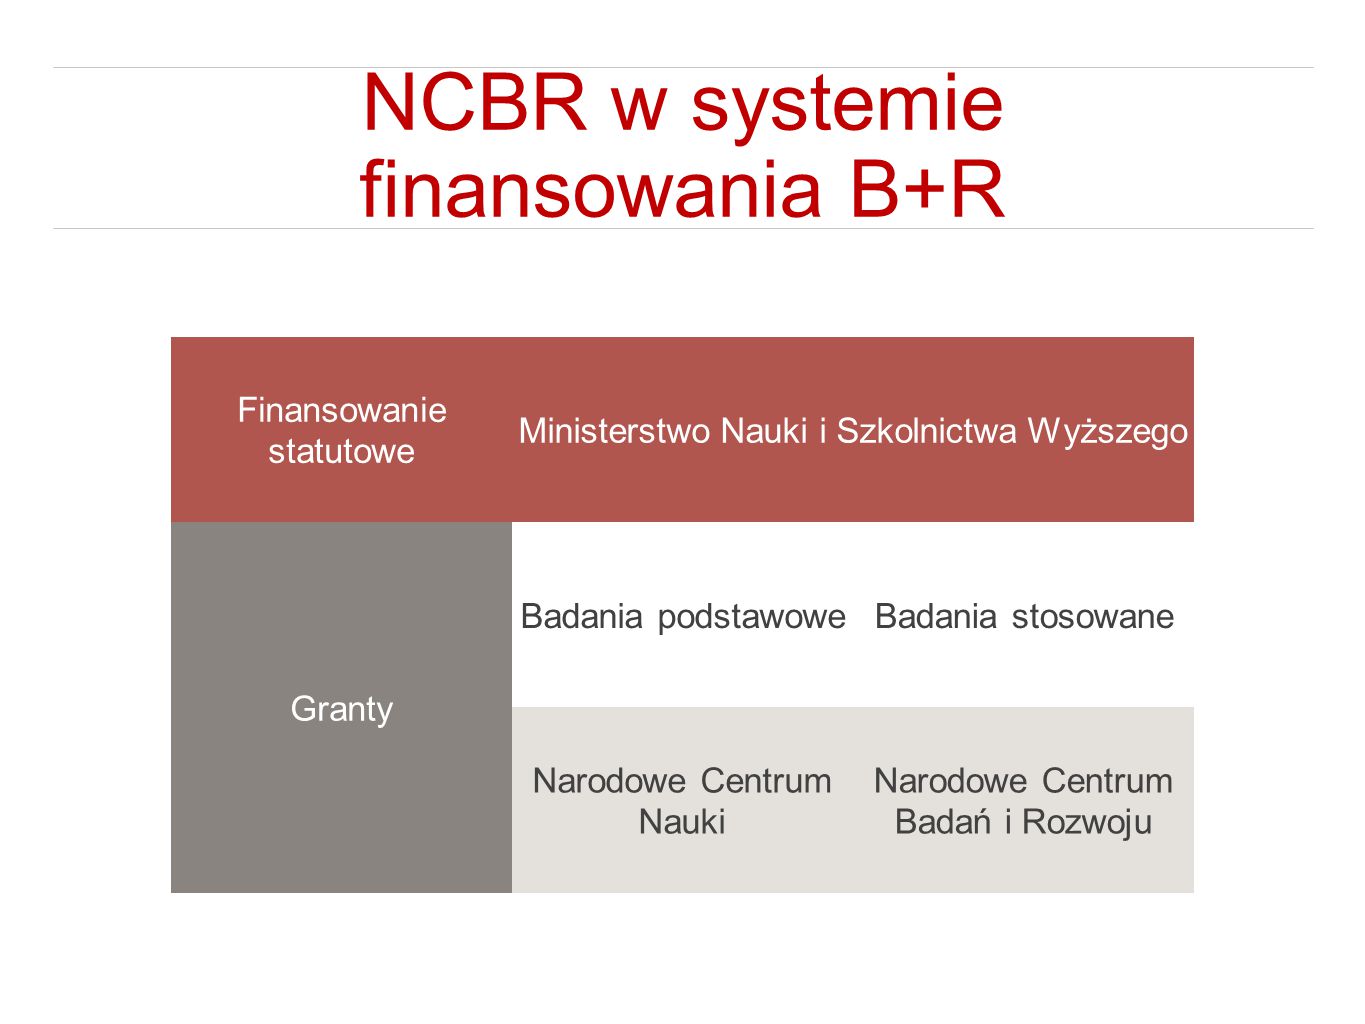 NCBR w systemie finansowania B+R